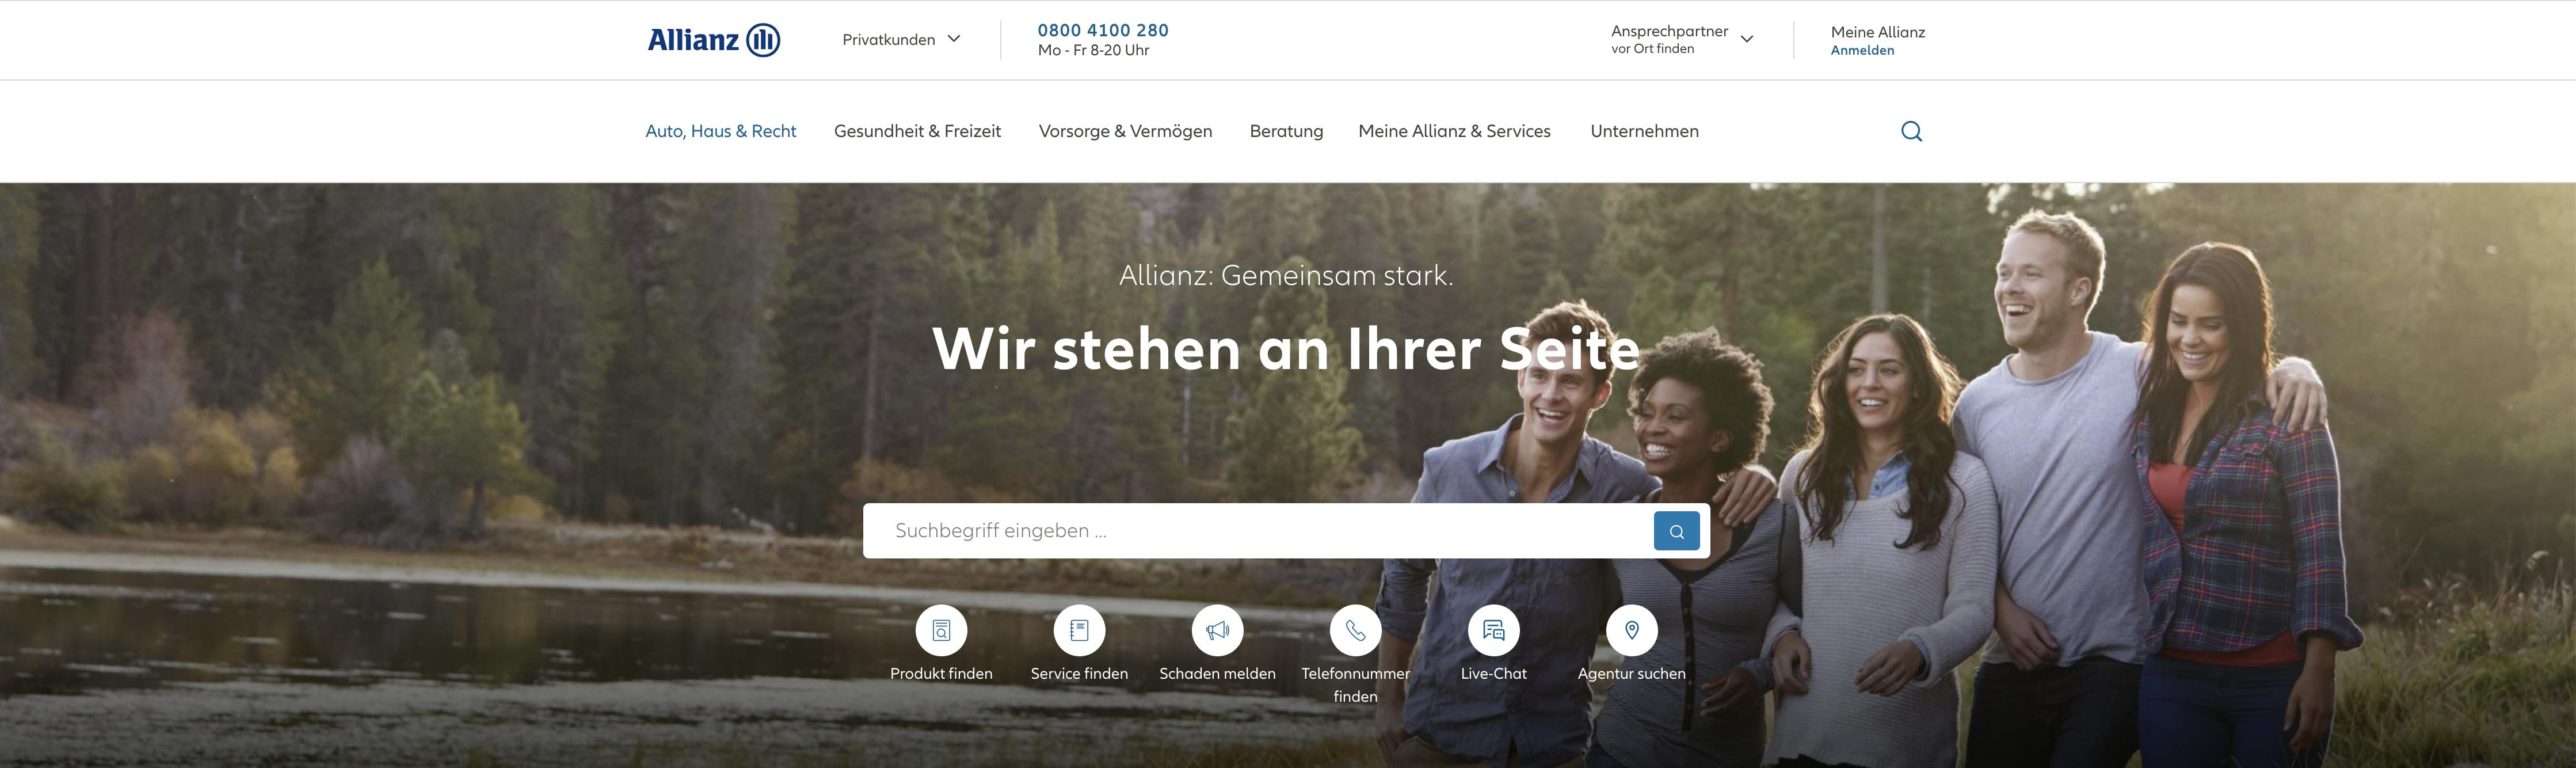 Allianz Header